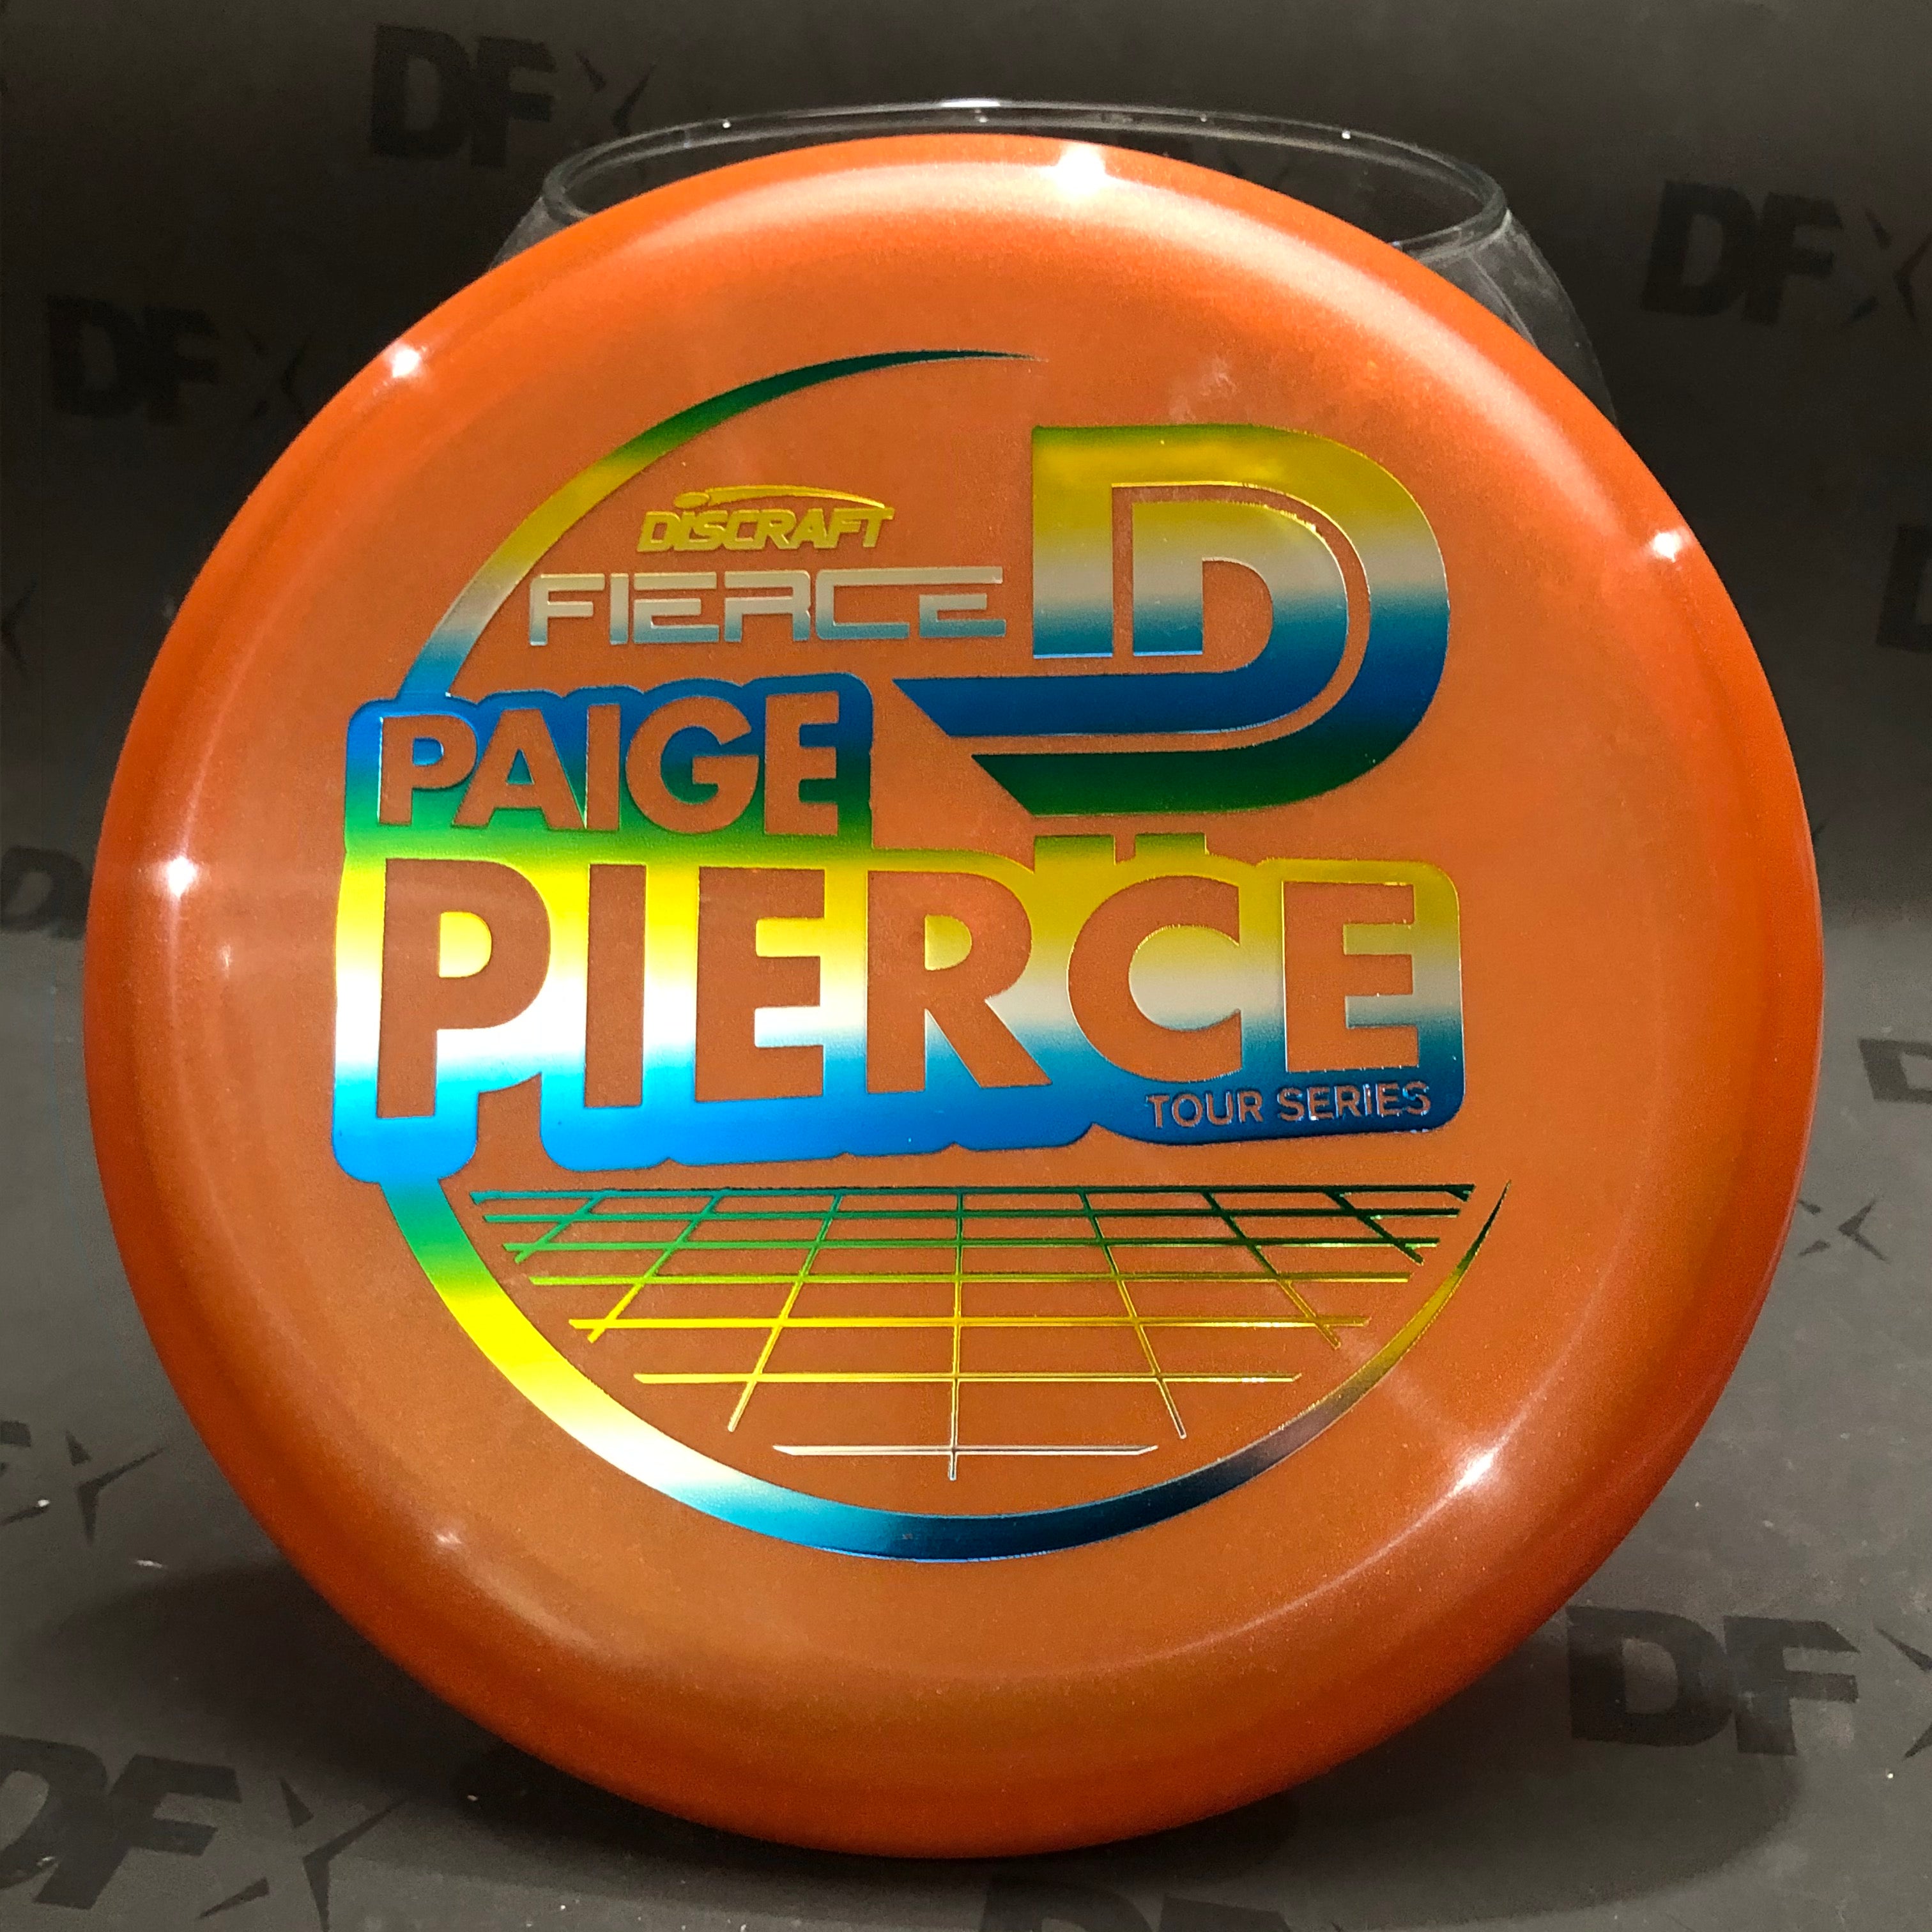 Discraft Fierce - 2021 Paige Pierce Tour Series (limit 1 please)